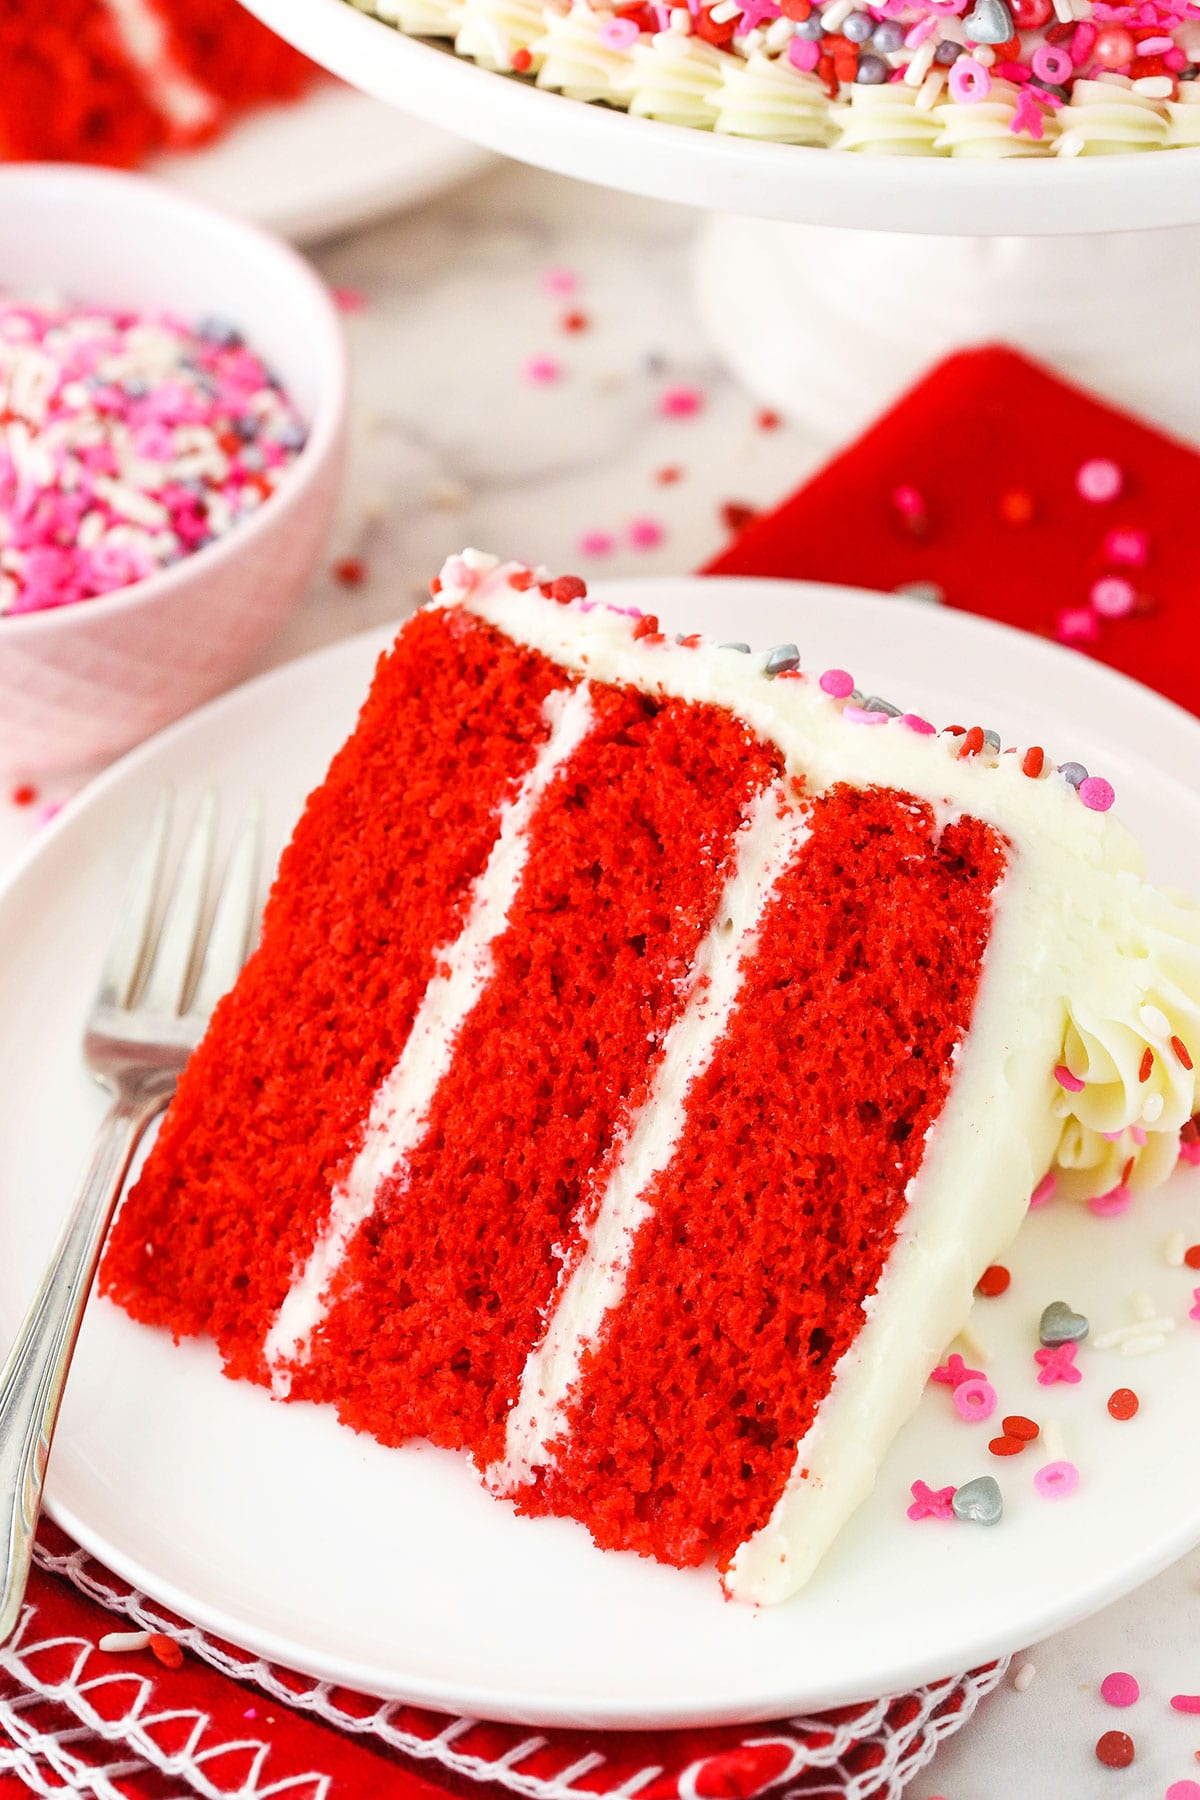 Best Red Velvet Cake In Bangalore | Order Online